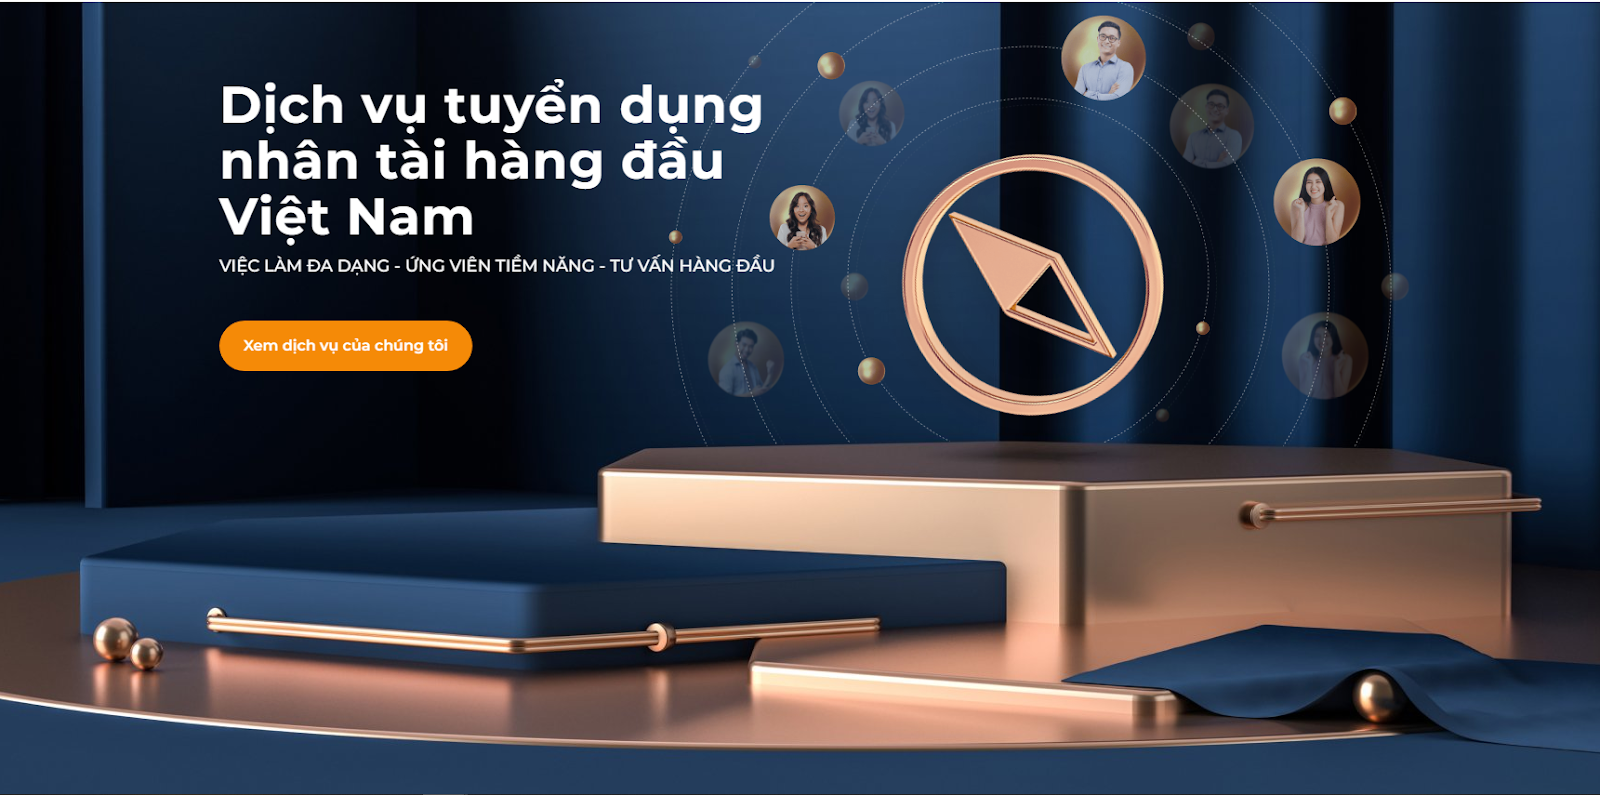 Navigos Search - Công ty headhunter hàng đầu Việt Nam